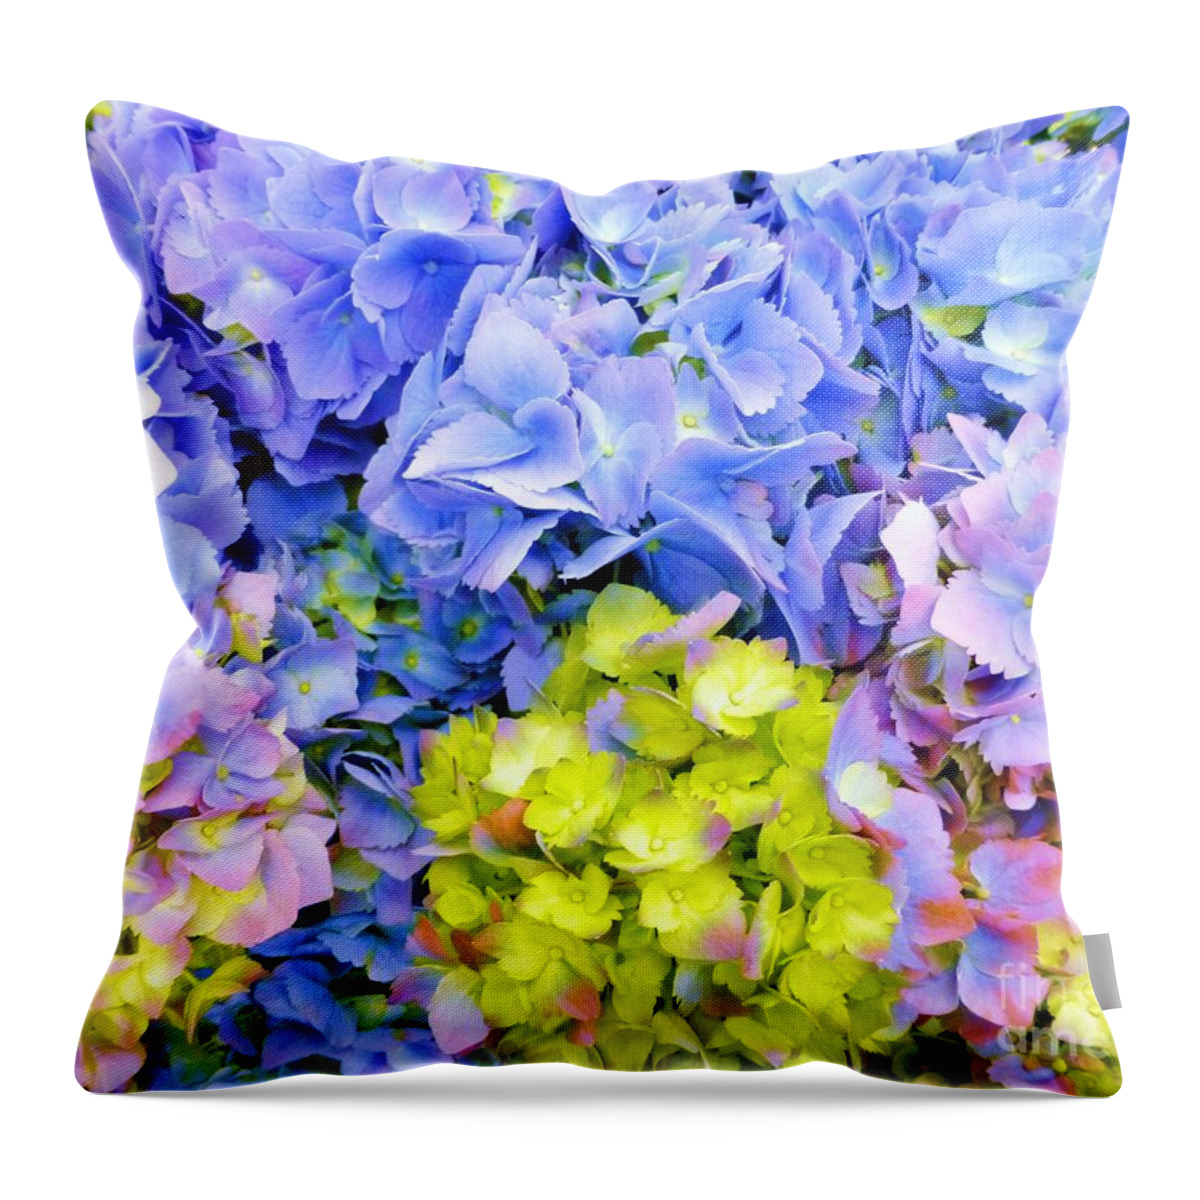 Hydrangea Throw Pillow featuring the photograph Hydrangeas en masse by Barbie Corbett-Newmin